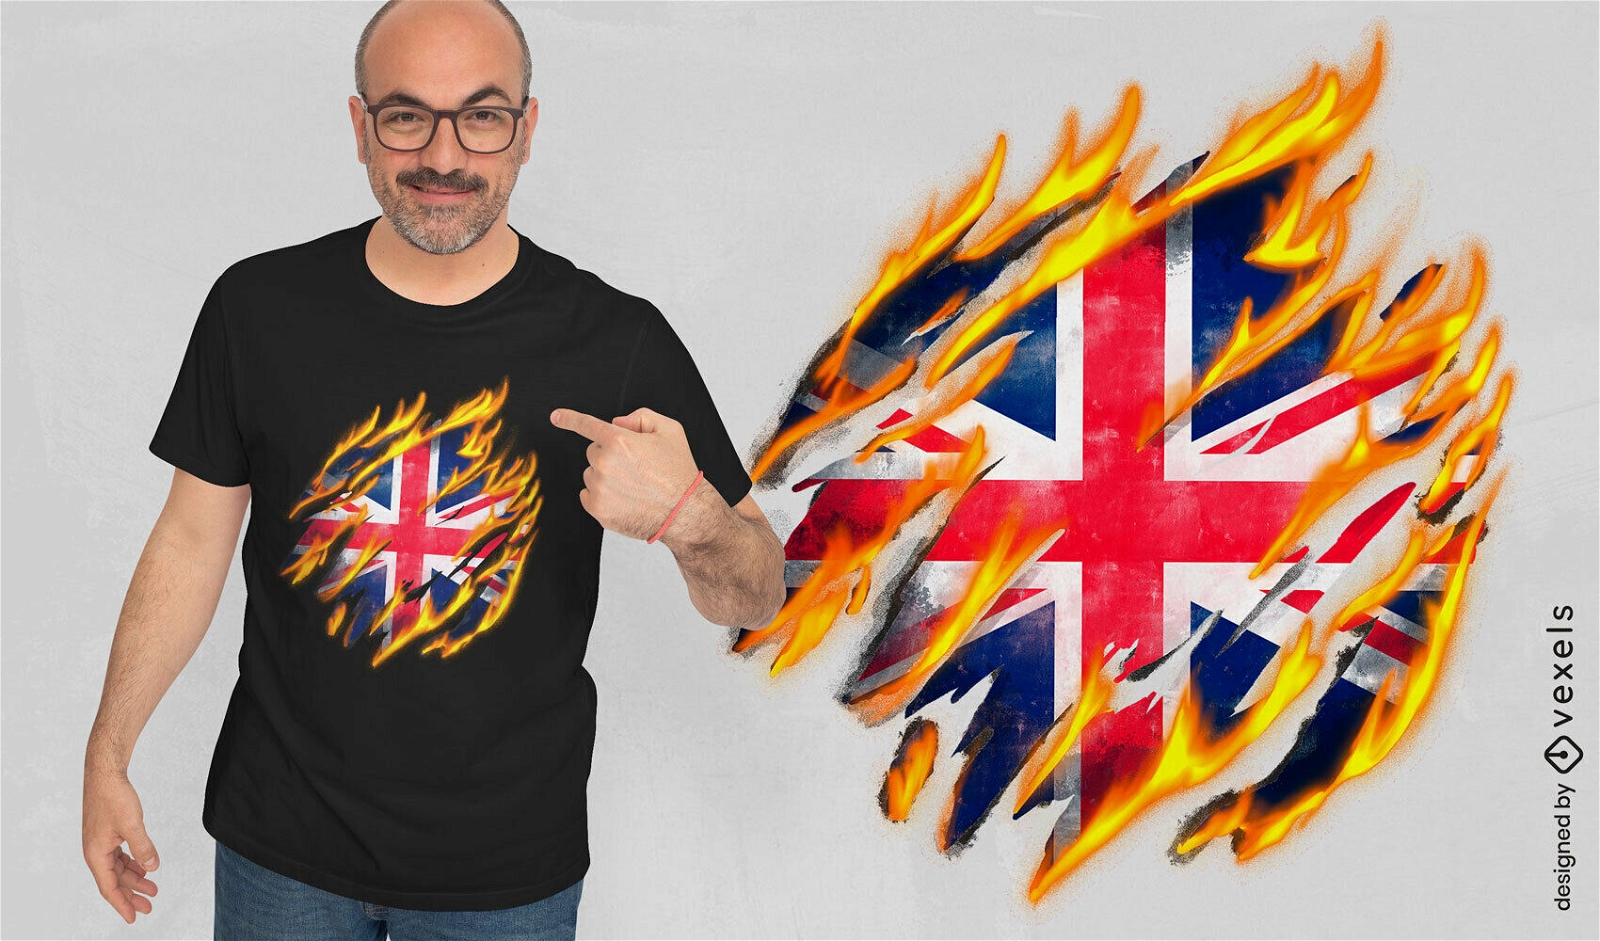 Dise?o de camiseta de bandera brit?nica en llamas